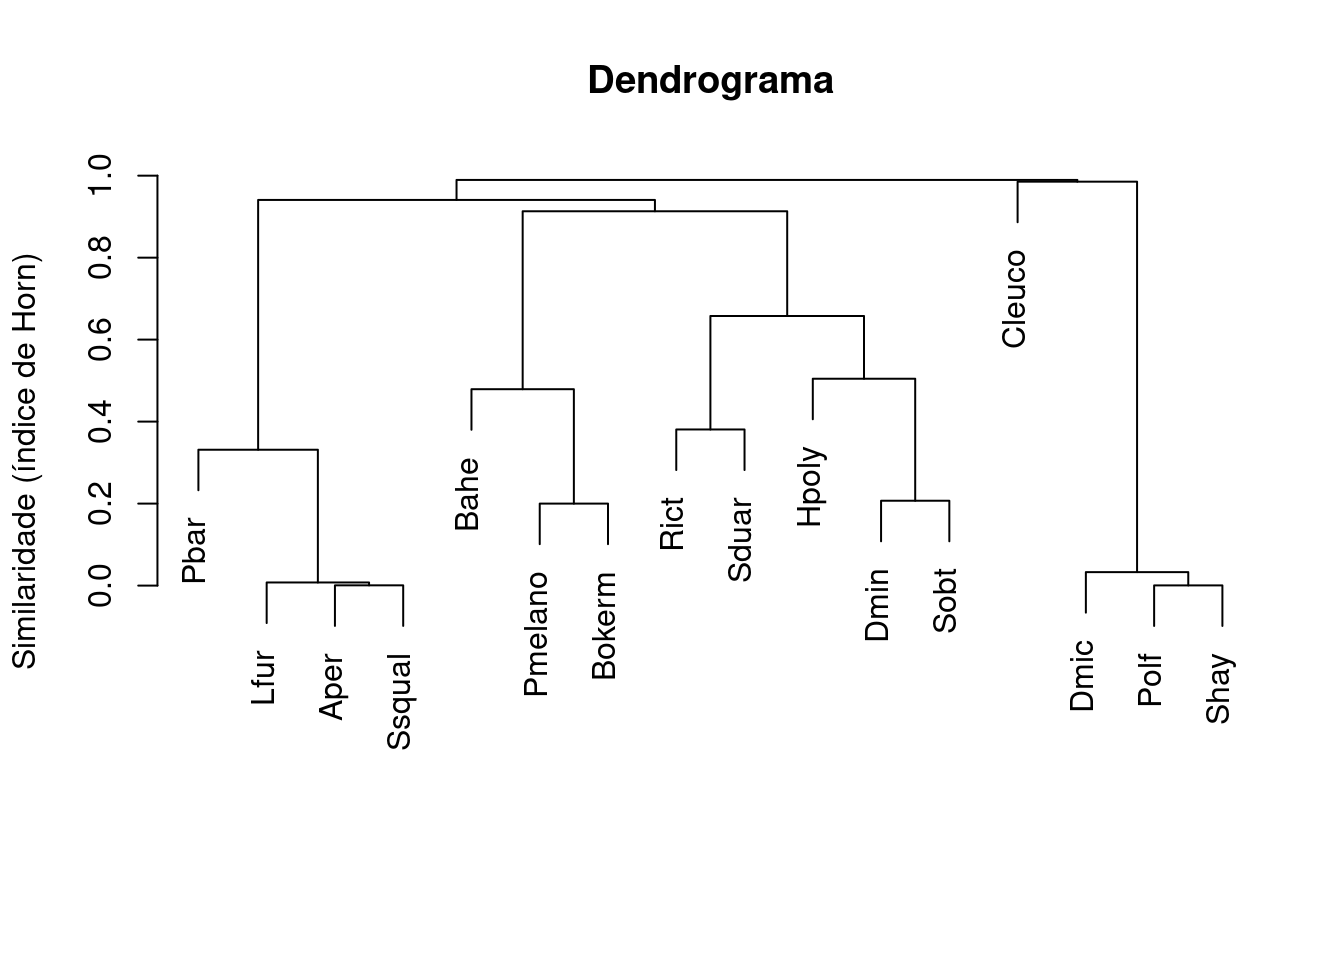 Dendrograma mostrando uma análise de agrupamento de anuros.